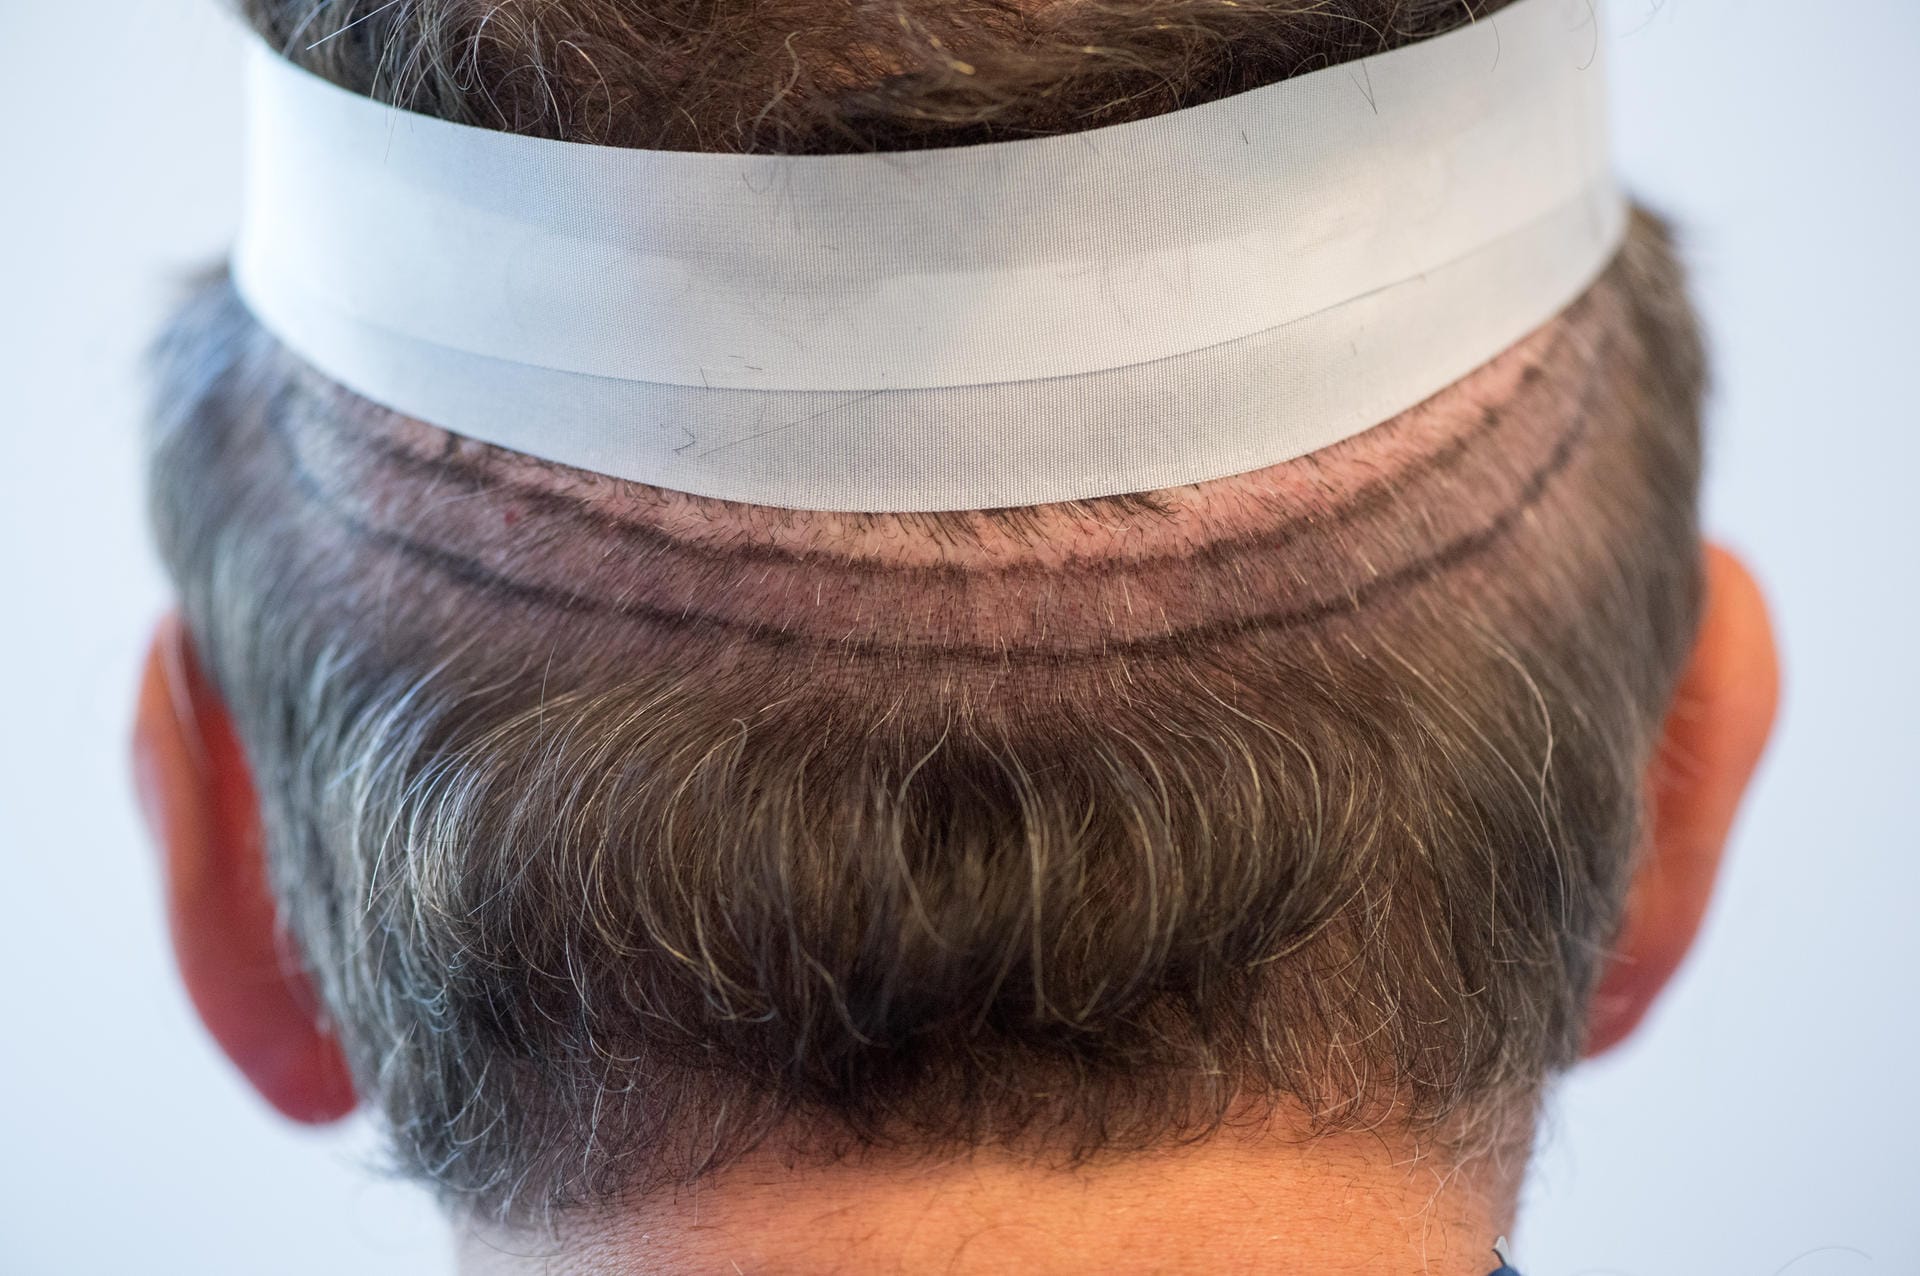 Bei der Streifenentnahme wird da, wo noch genügend Haare wachsen, ein schmaler Haarstreifen entnommen um daraus die Haarwurzeln zu entnehmen.